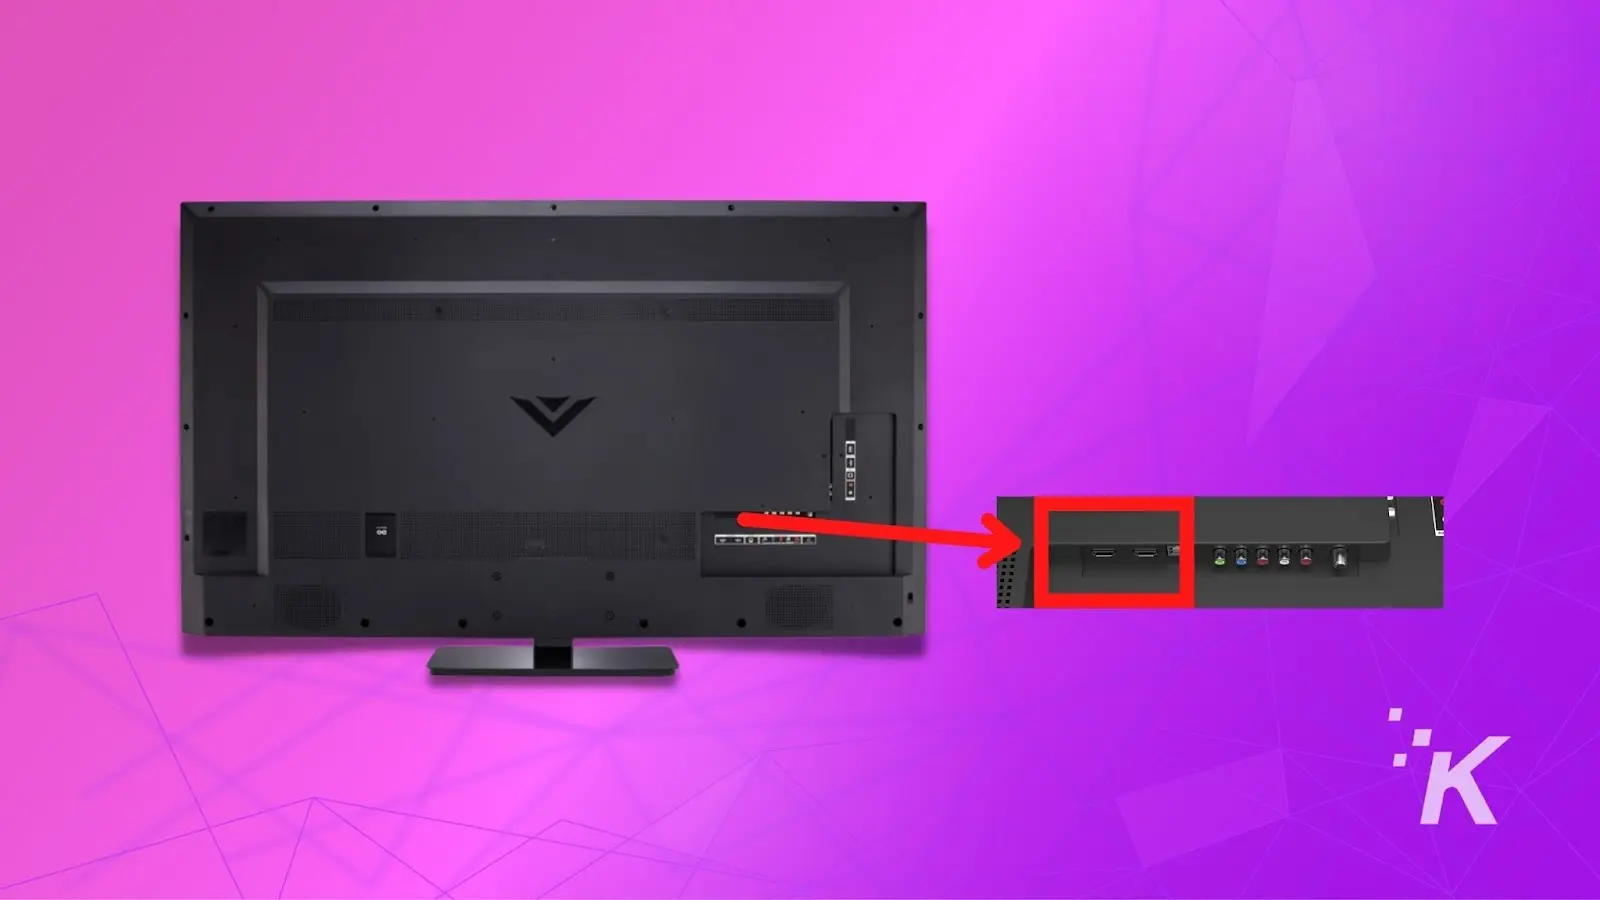 图片说明 将 HDMI 电缆的一端连接到 Vizio 电视上的 HDMI ARC 端口